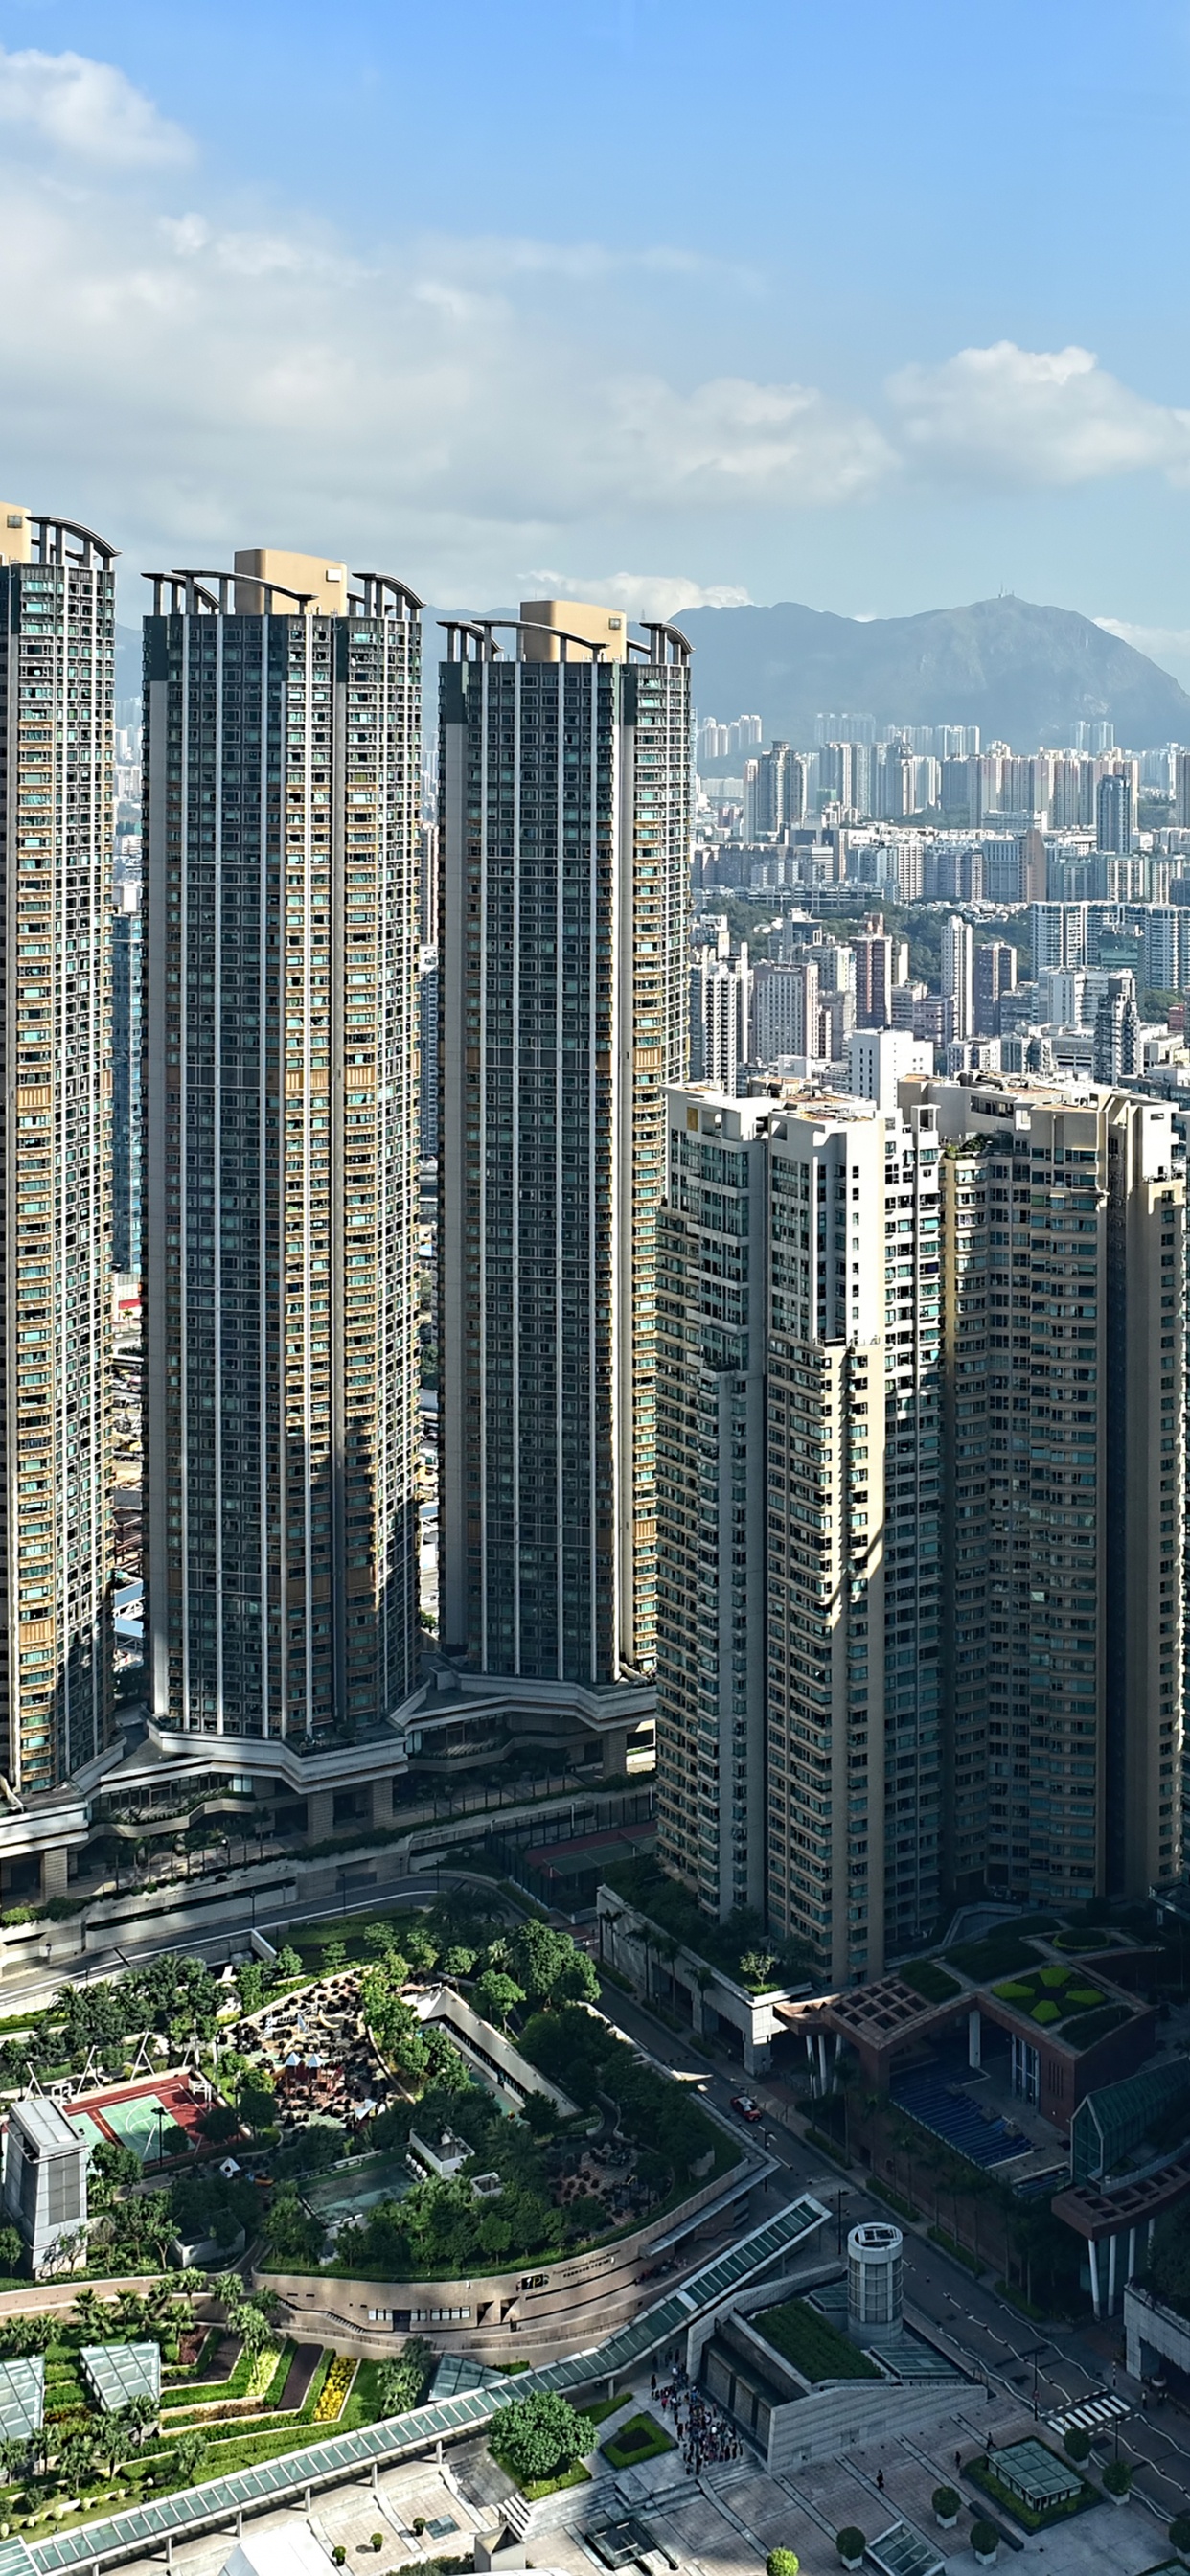 香港, 城市, 大都会, 城市景观, 塔块 壁纸 1242x2688 允许